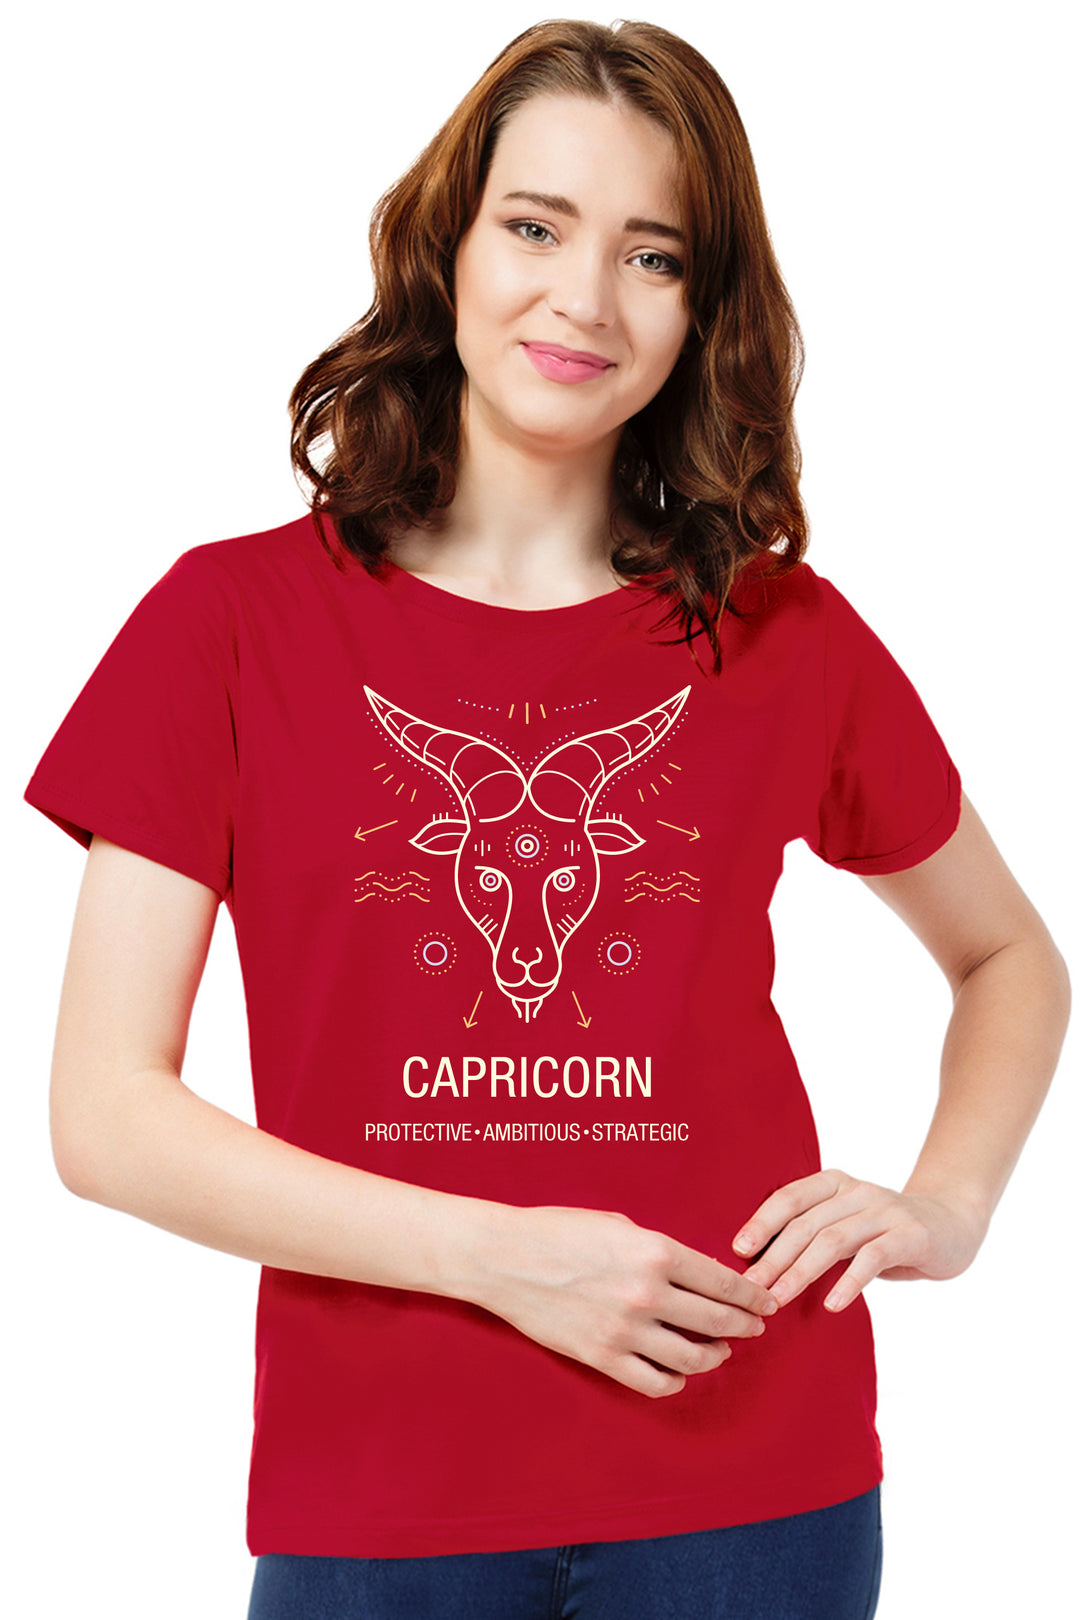 FflirtyGo Capricorn Sign Printed T-Shirt - FflirtyGo